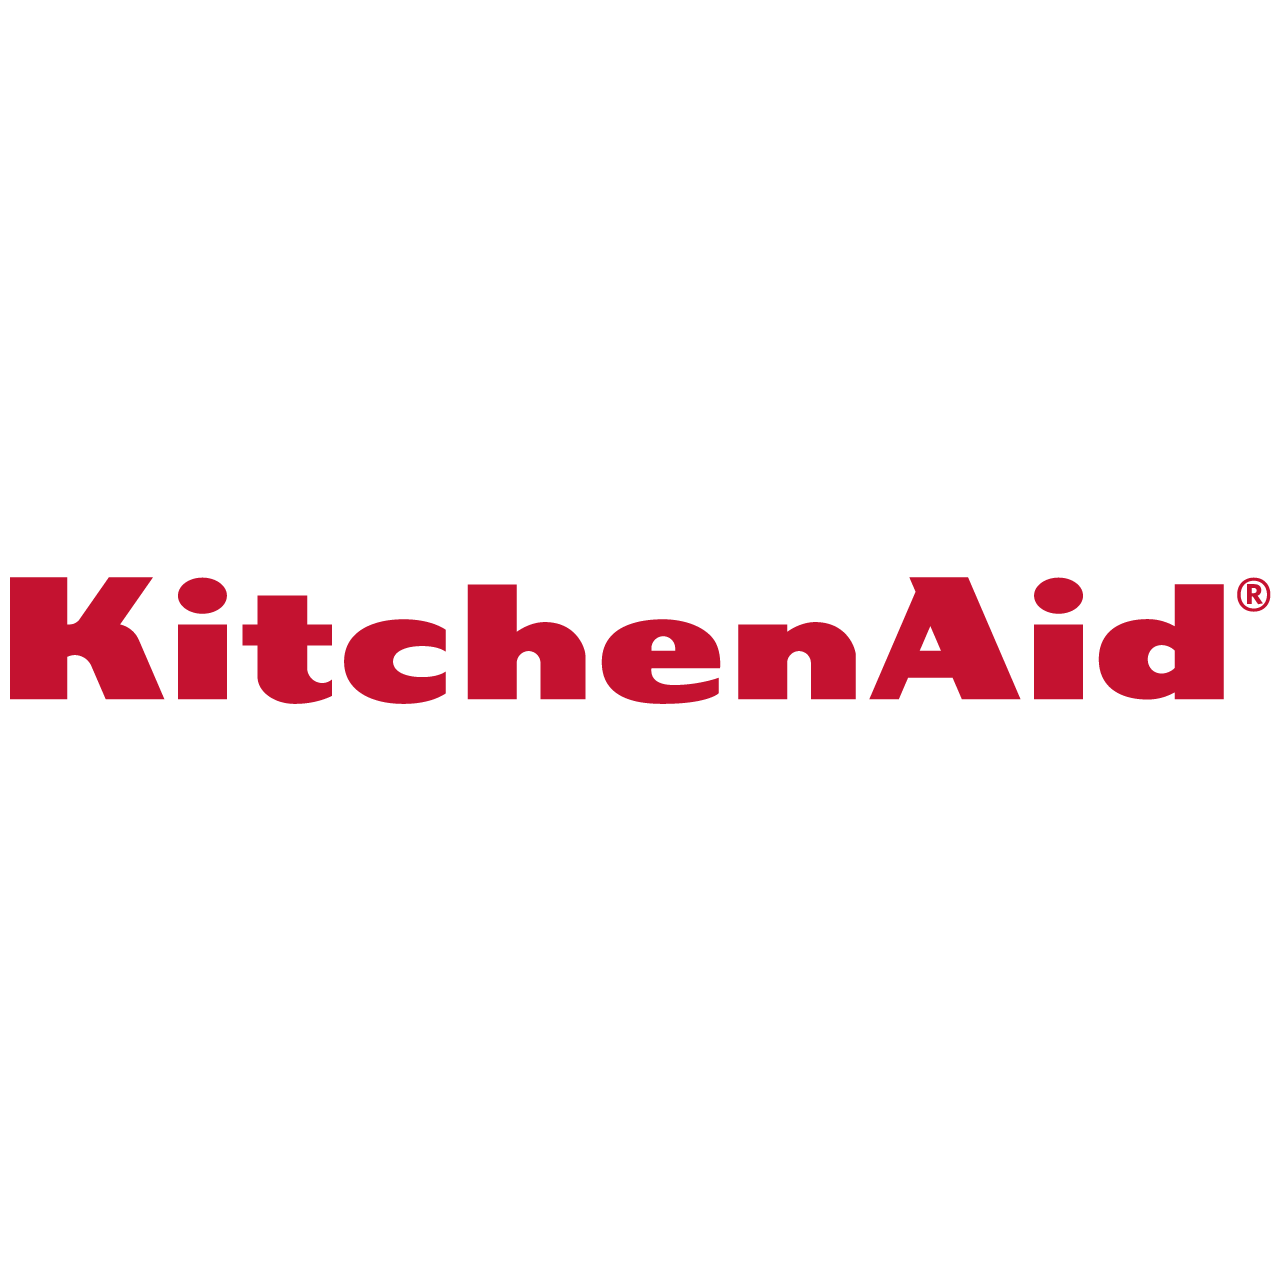 KitchenAid 7-Cup Food Processor